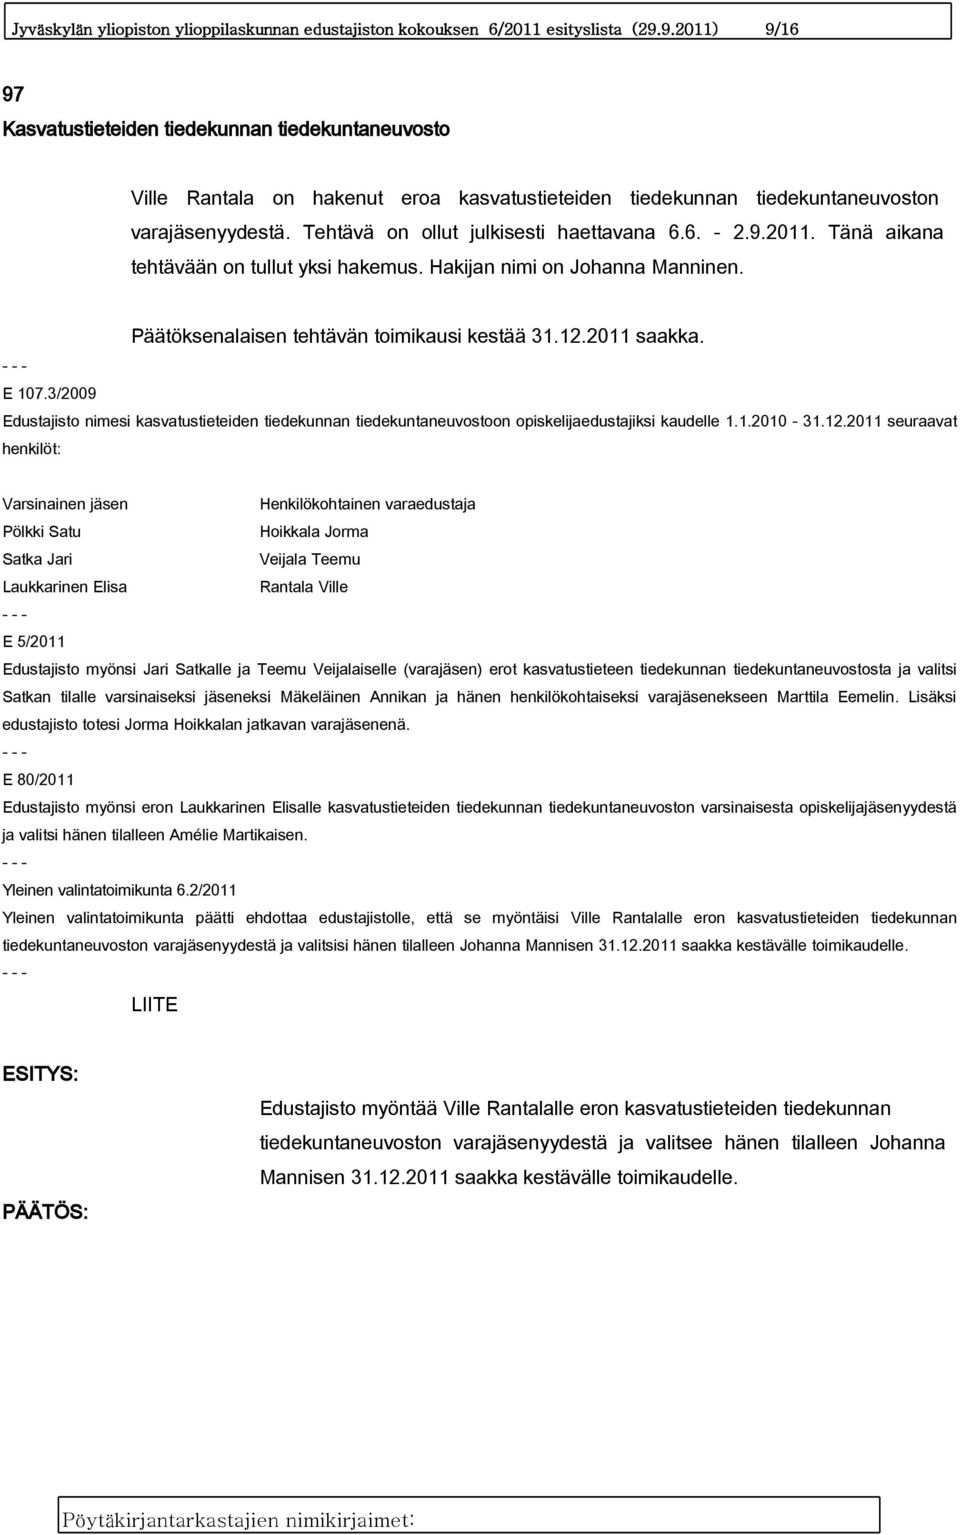 Tehtävä on ollut julkisesti haettavana 6.6. - 2.9.2011. Tänä aikana tehtävään on tullut yksi hakemus. Hakijan nimi on Johanna Manninen. Päätöksenalaisen tehtävän toimikausi kestää 31.12.2011 saakka.